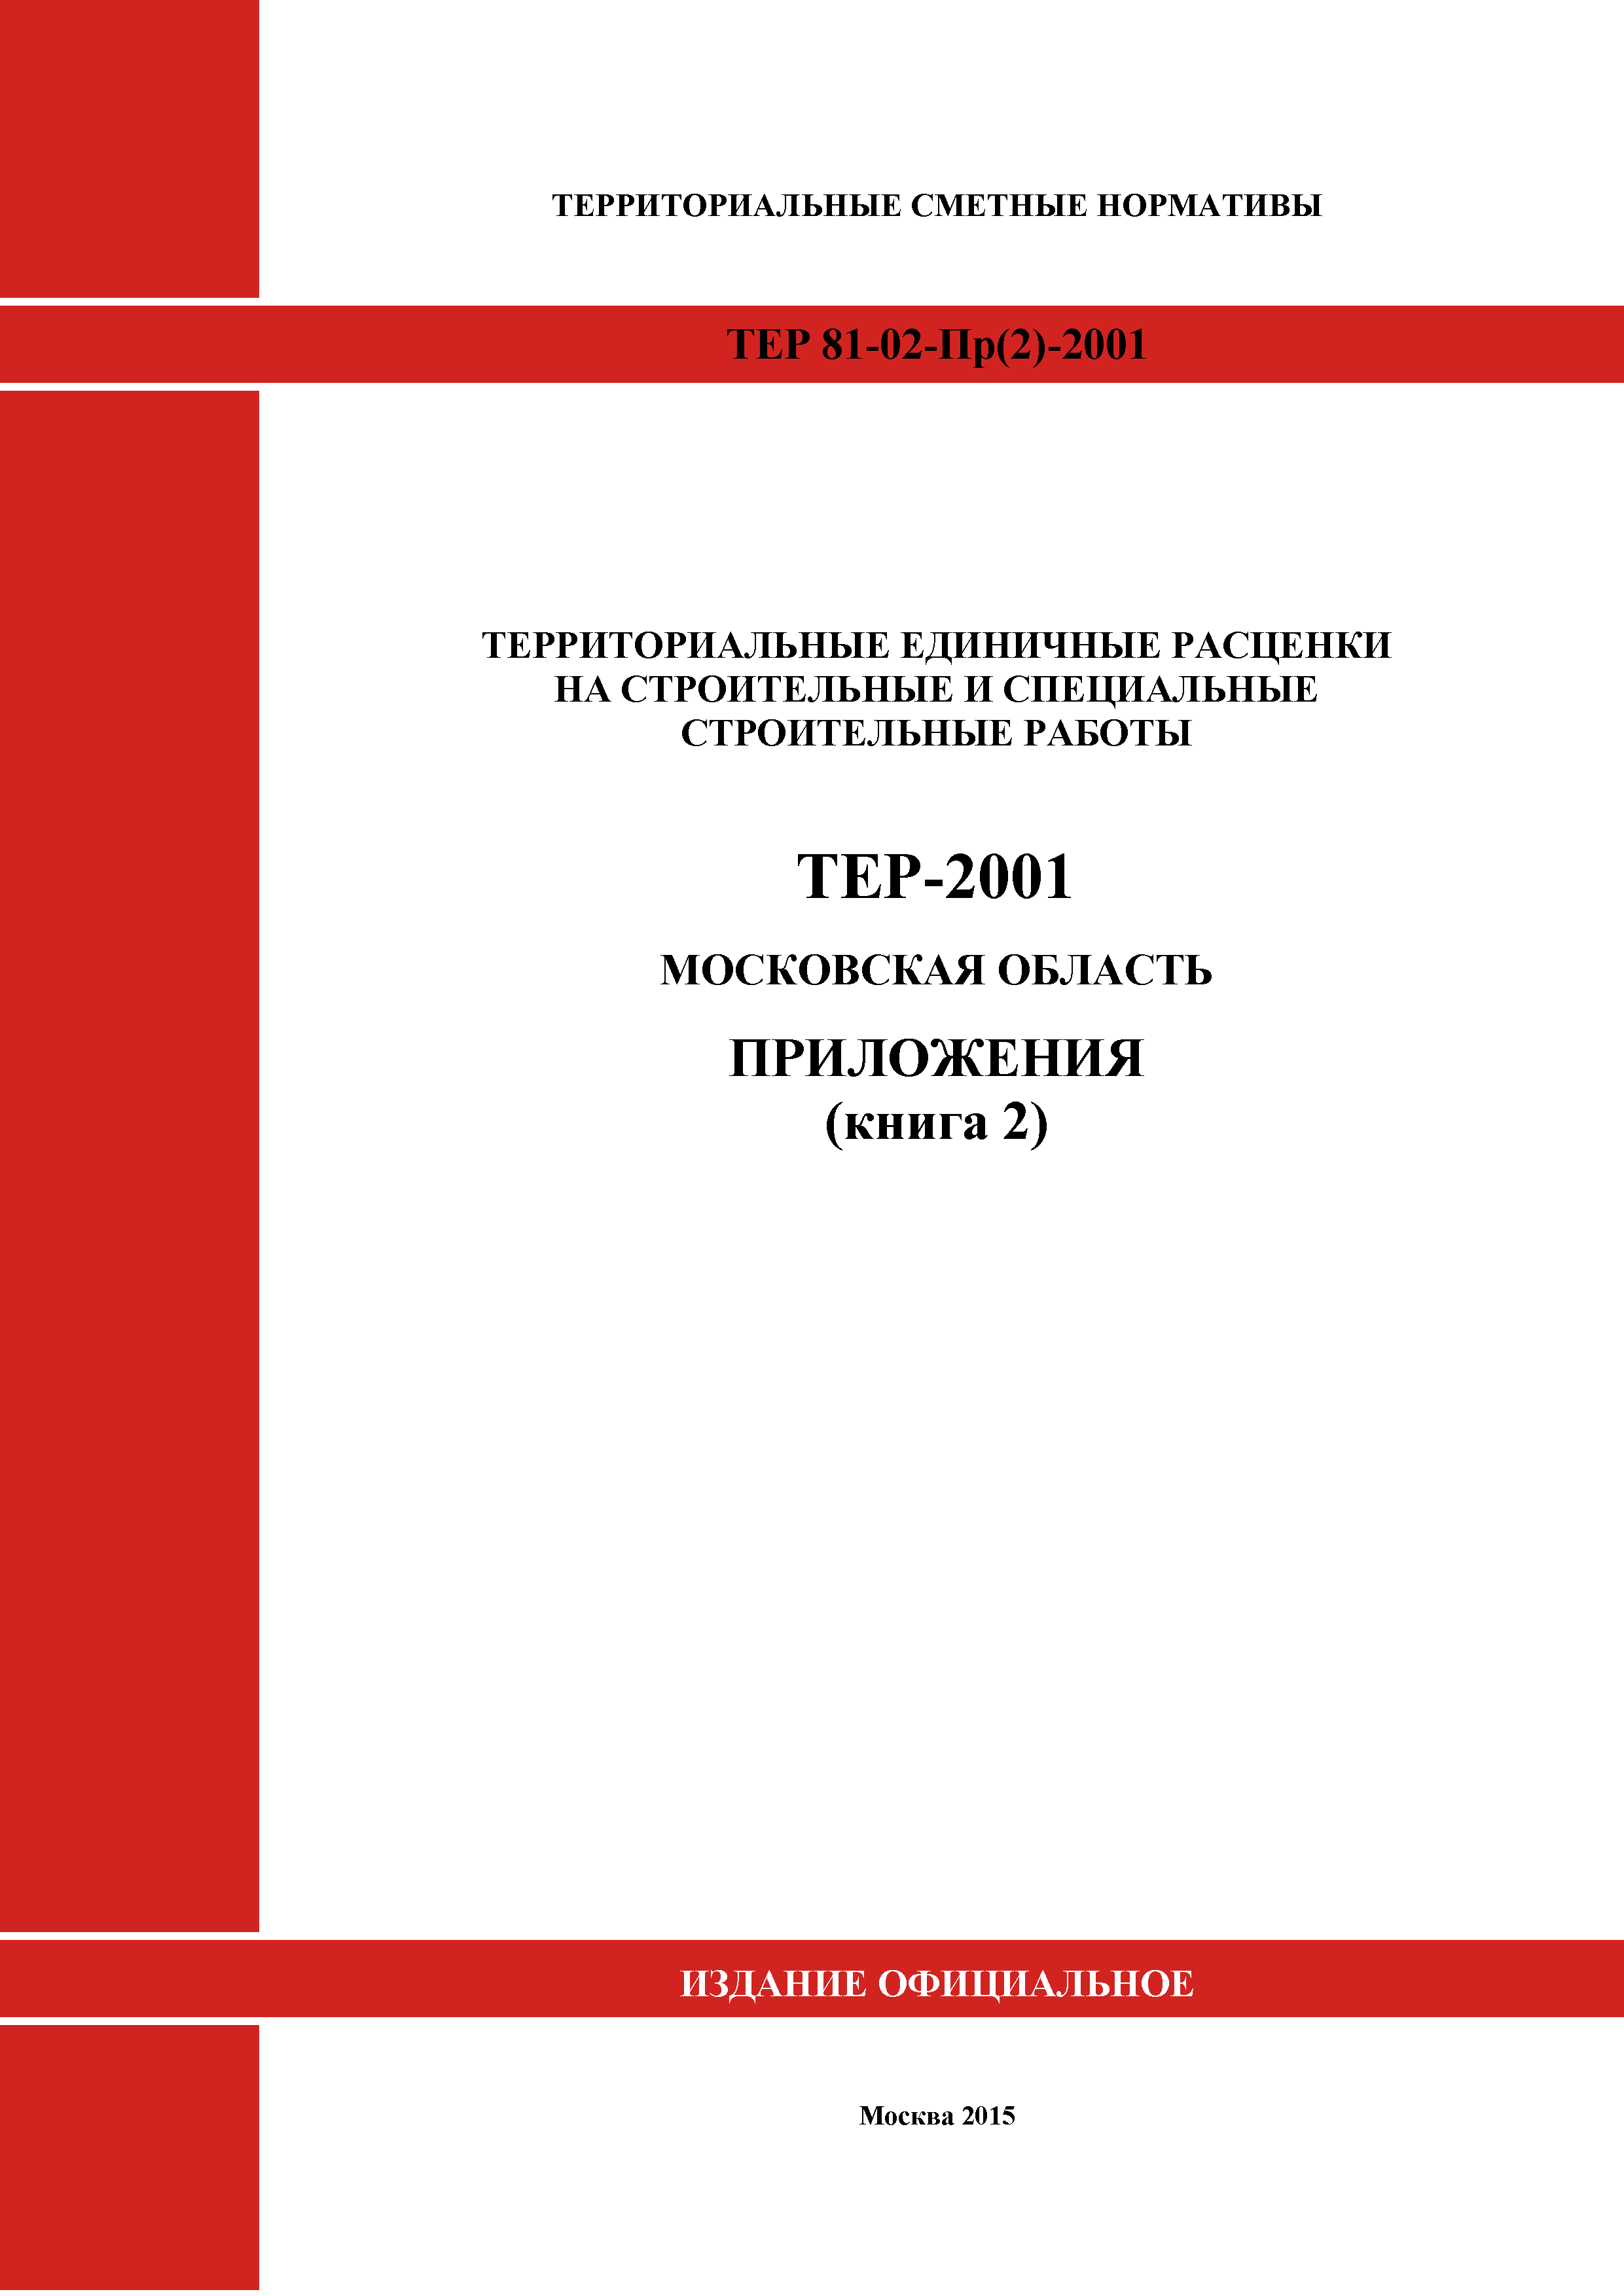 ТЕР ПР(2)-2001 Московской области